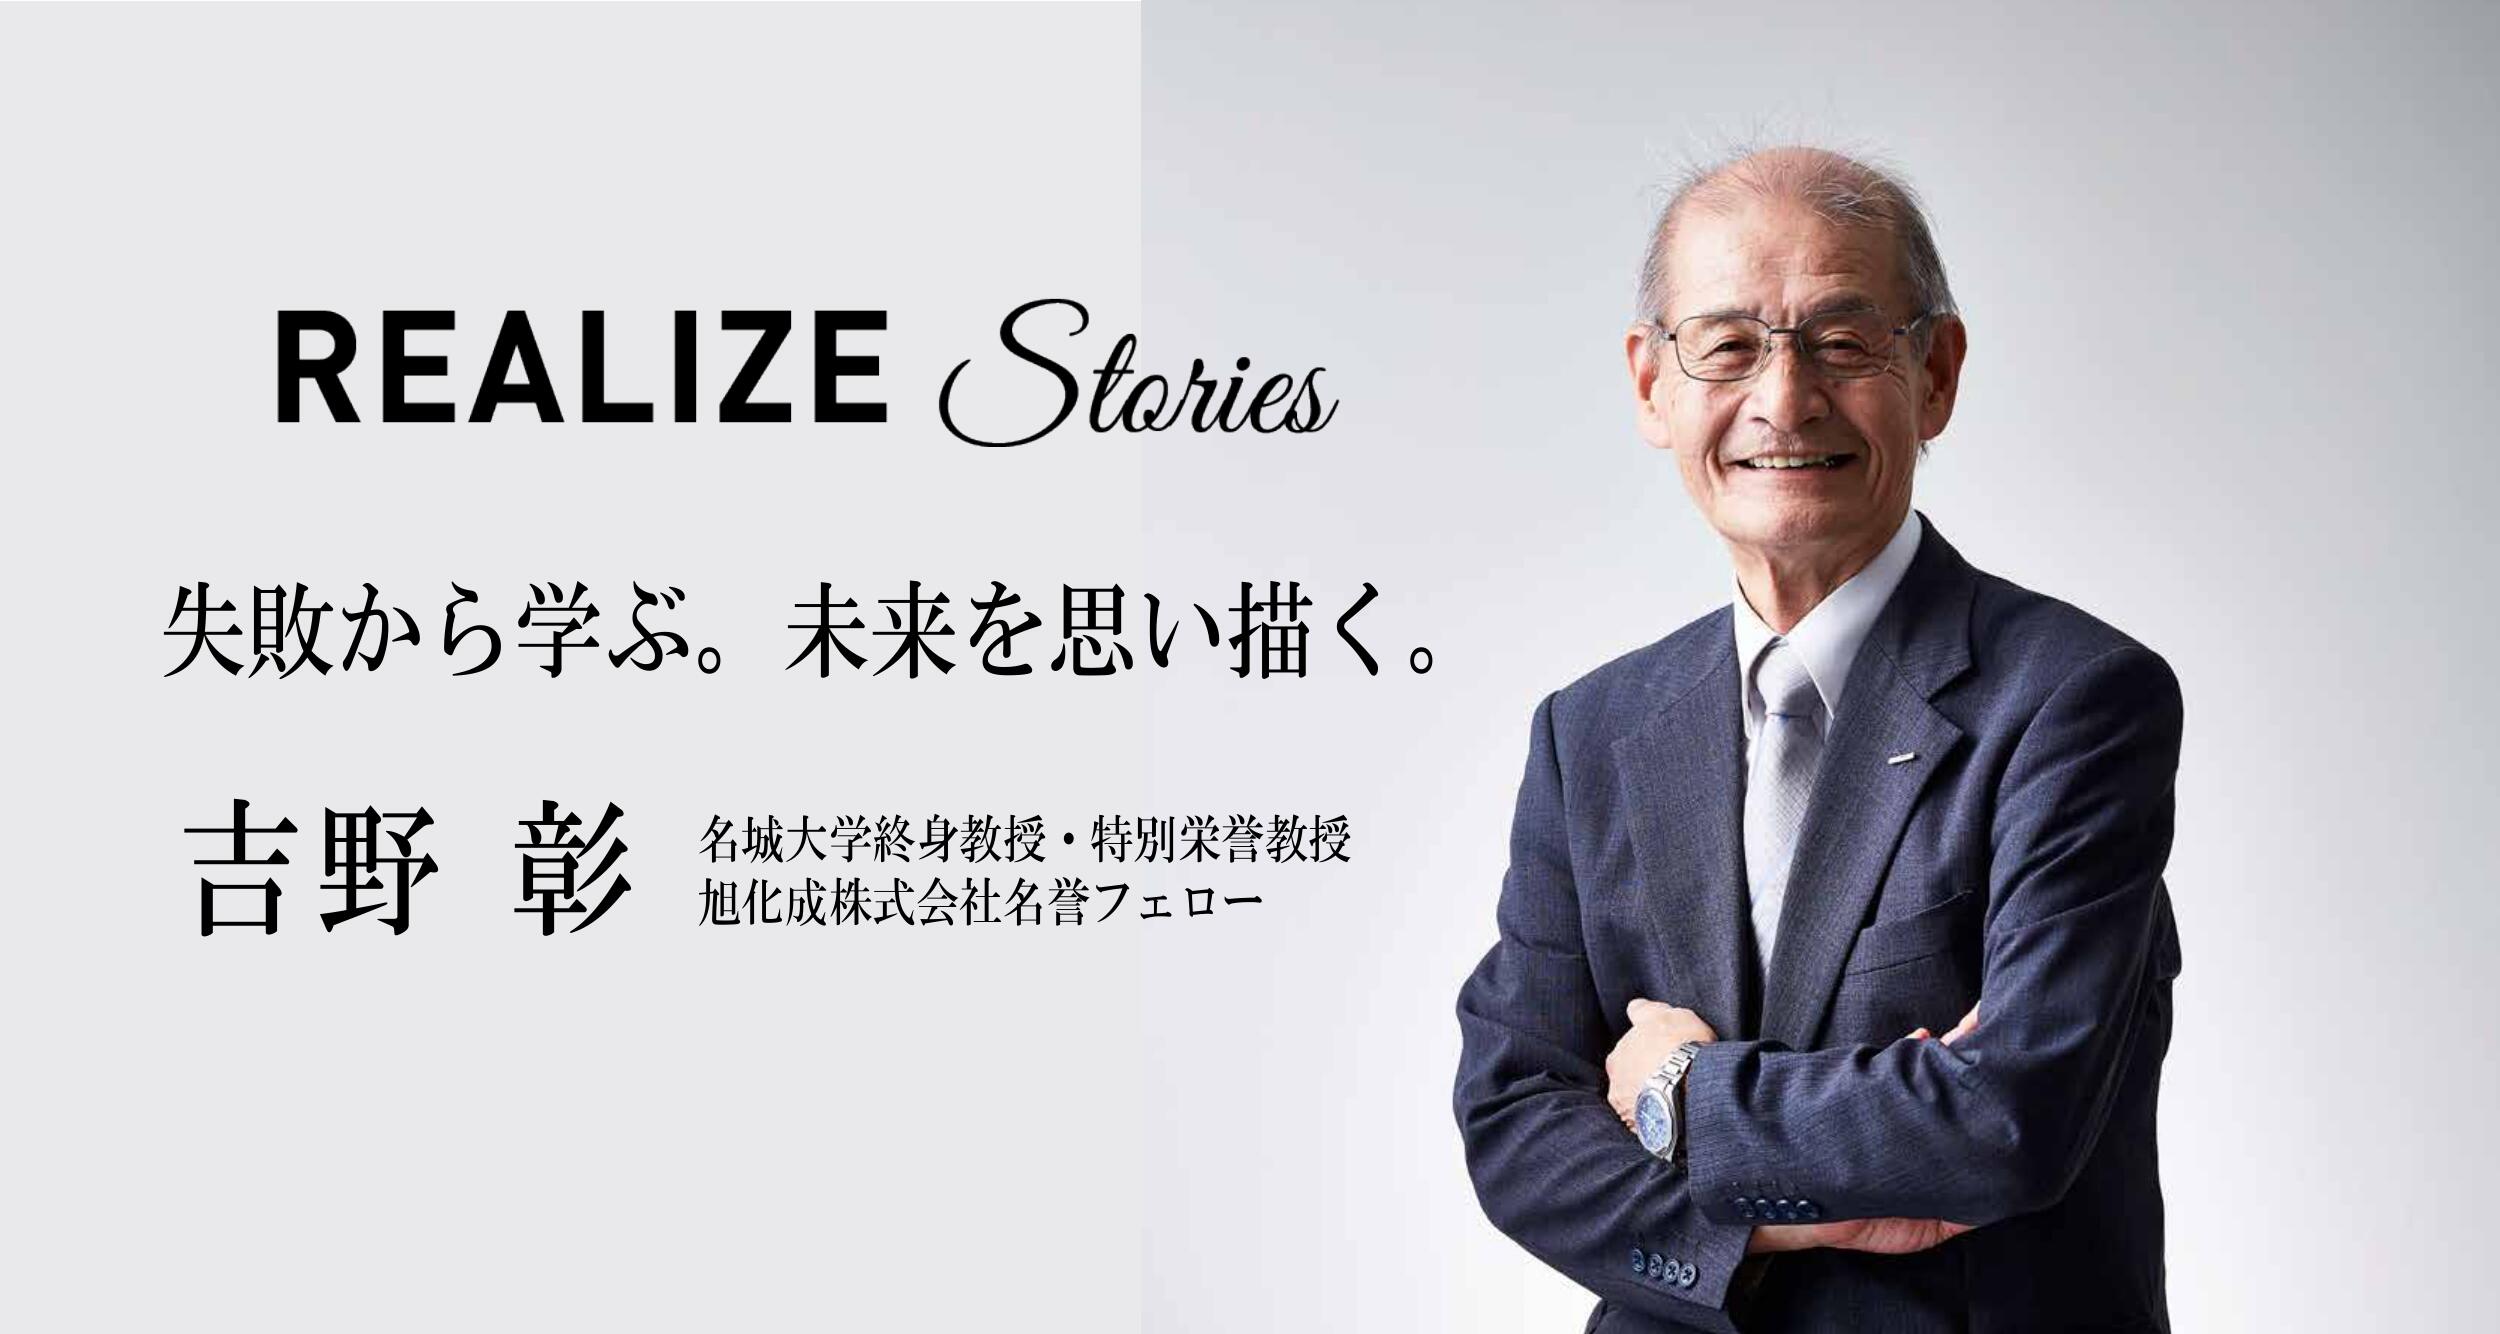 名城大学開学100周年REALIZE Stories 研究者「吉野 彰」